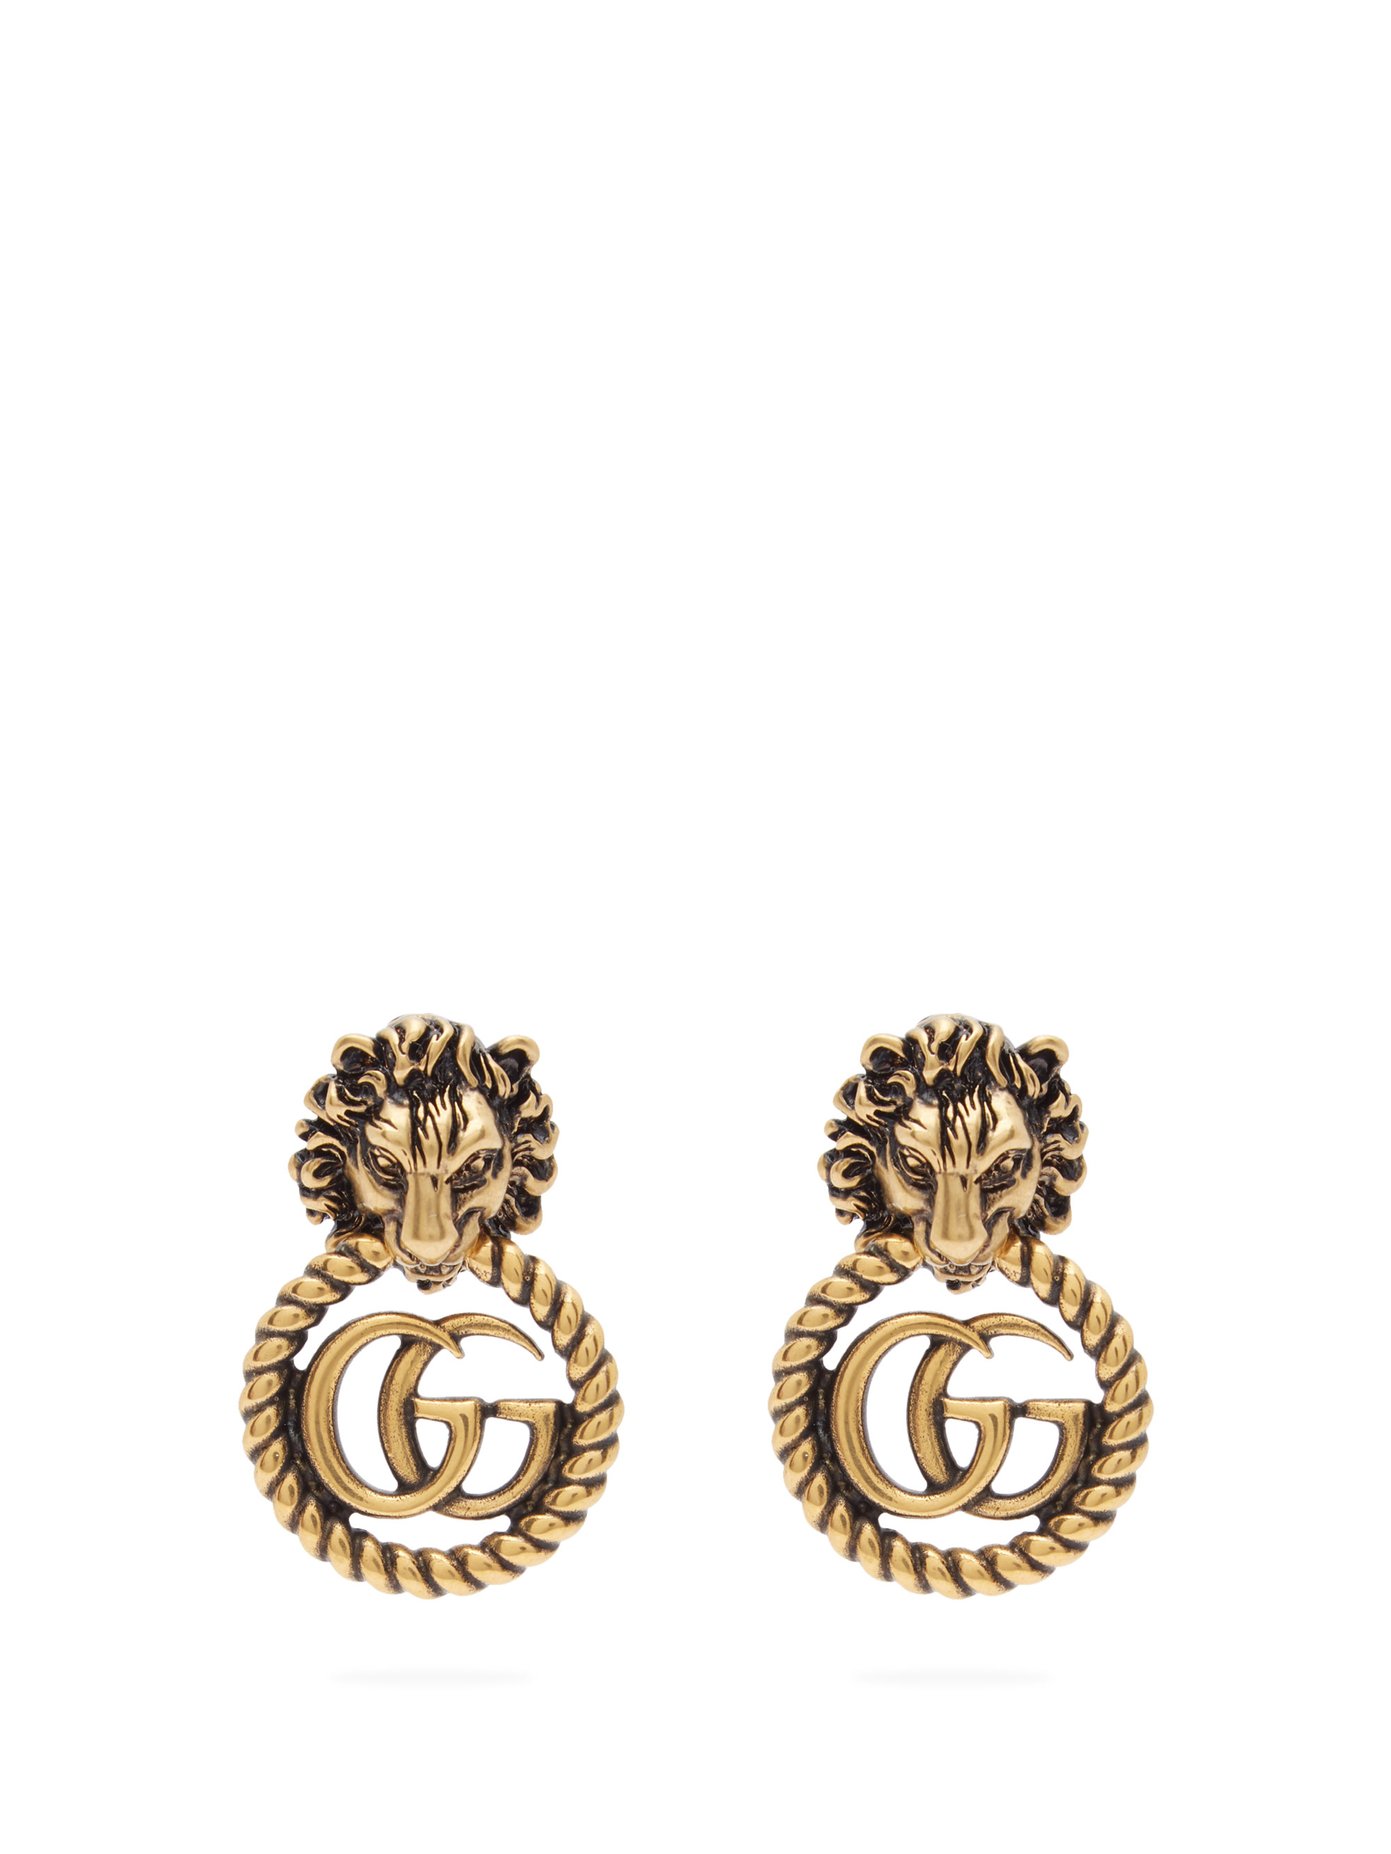 gucci earrings sale uk